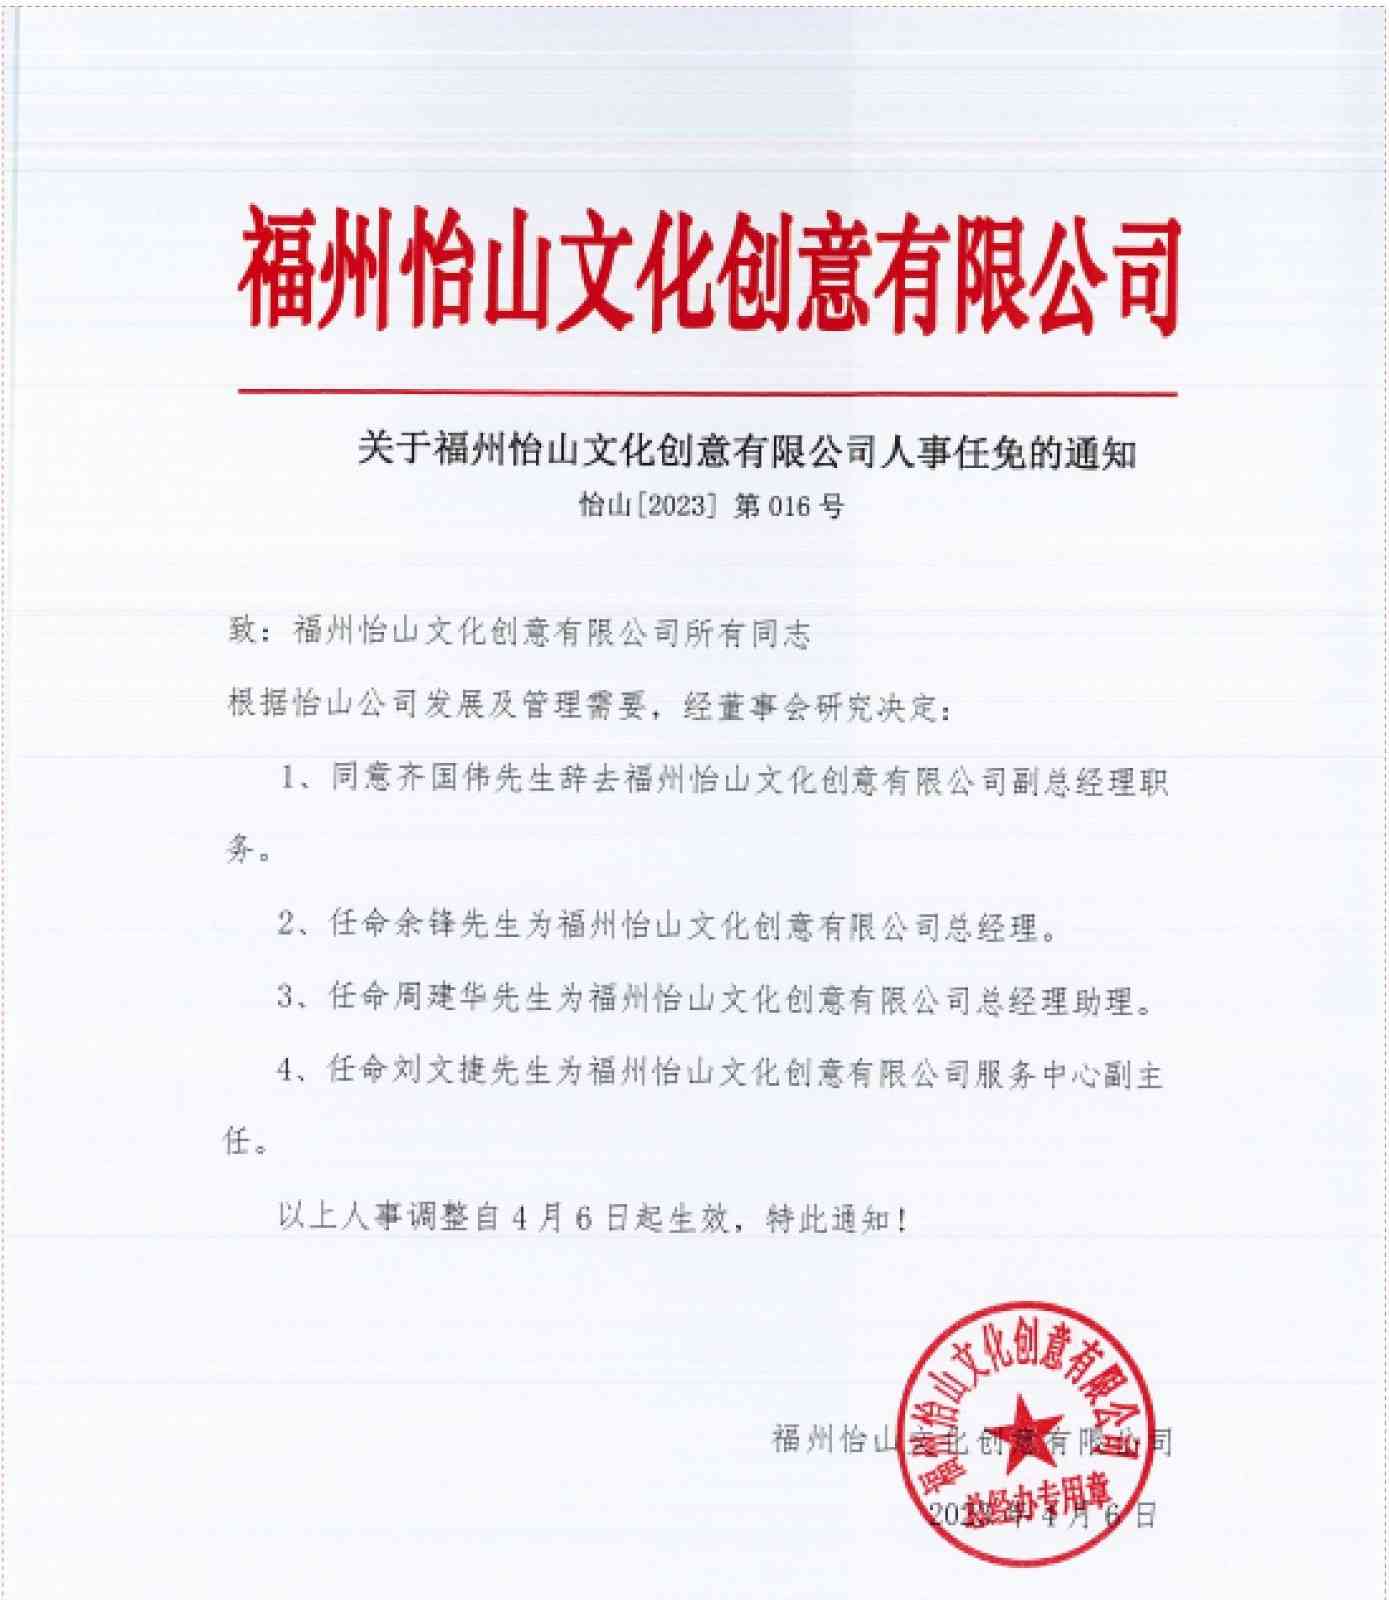 关于2023年4月6日福州怡山文化创意有限公司人事任免的通知(2)_00.jpg